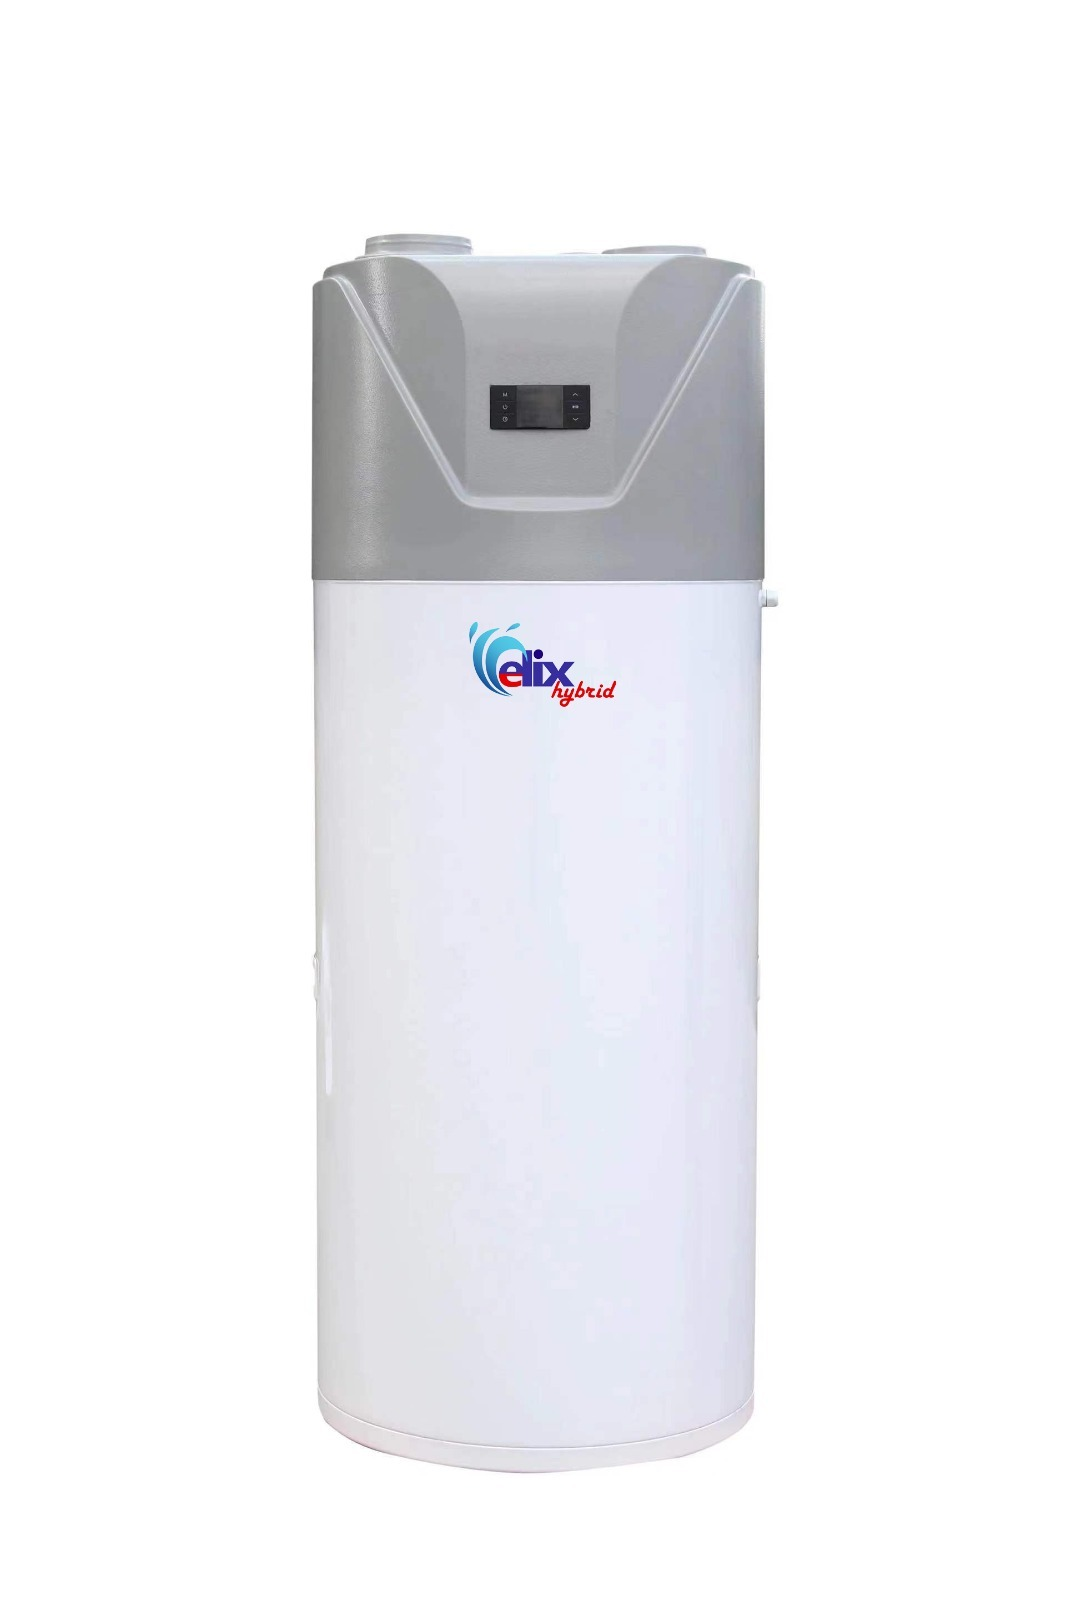 Brauchwasser-/Warmwasser Wärmepumpe mit WIFI-Funktion 200 Liter